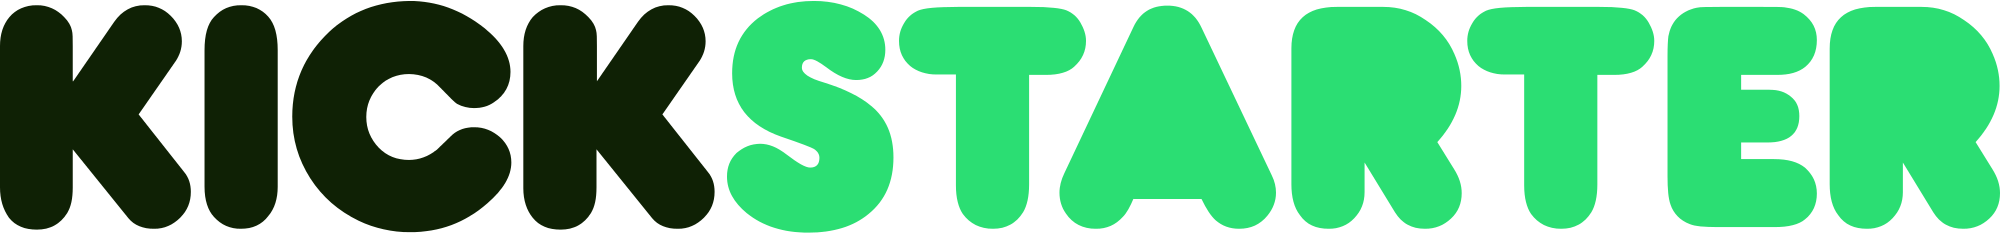 Kickstarter logo.svg